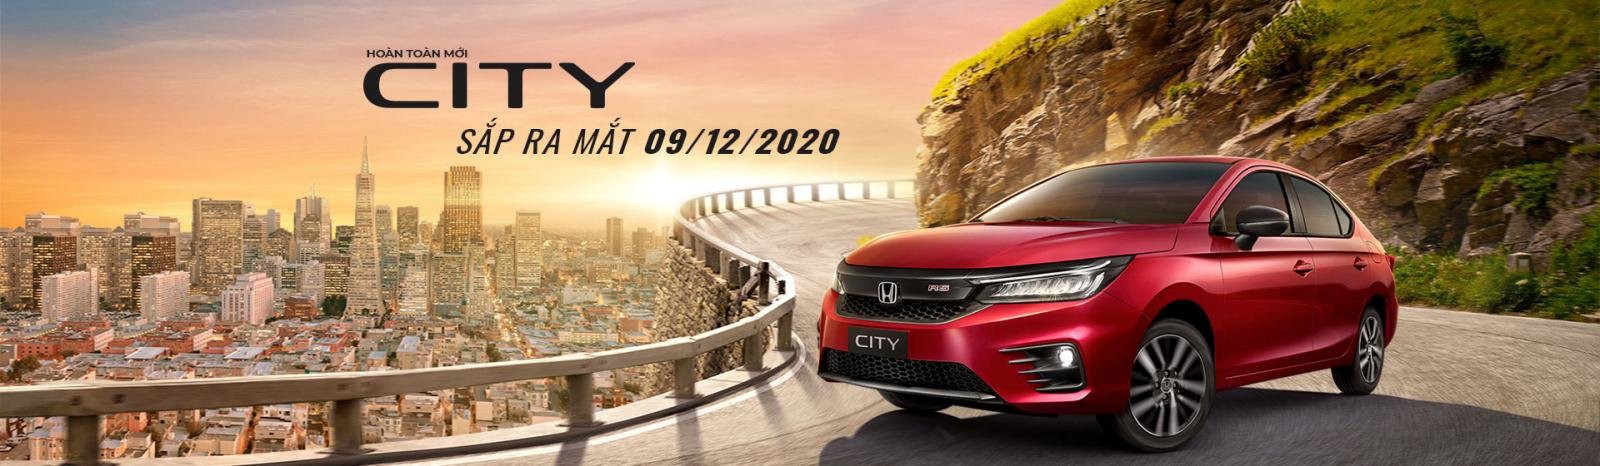 Honda City thế hệ mới ra mắt cuối năm 2020, phân khúc B làm mới